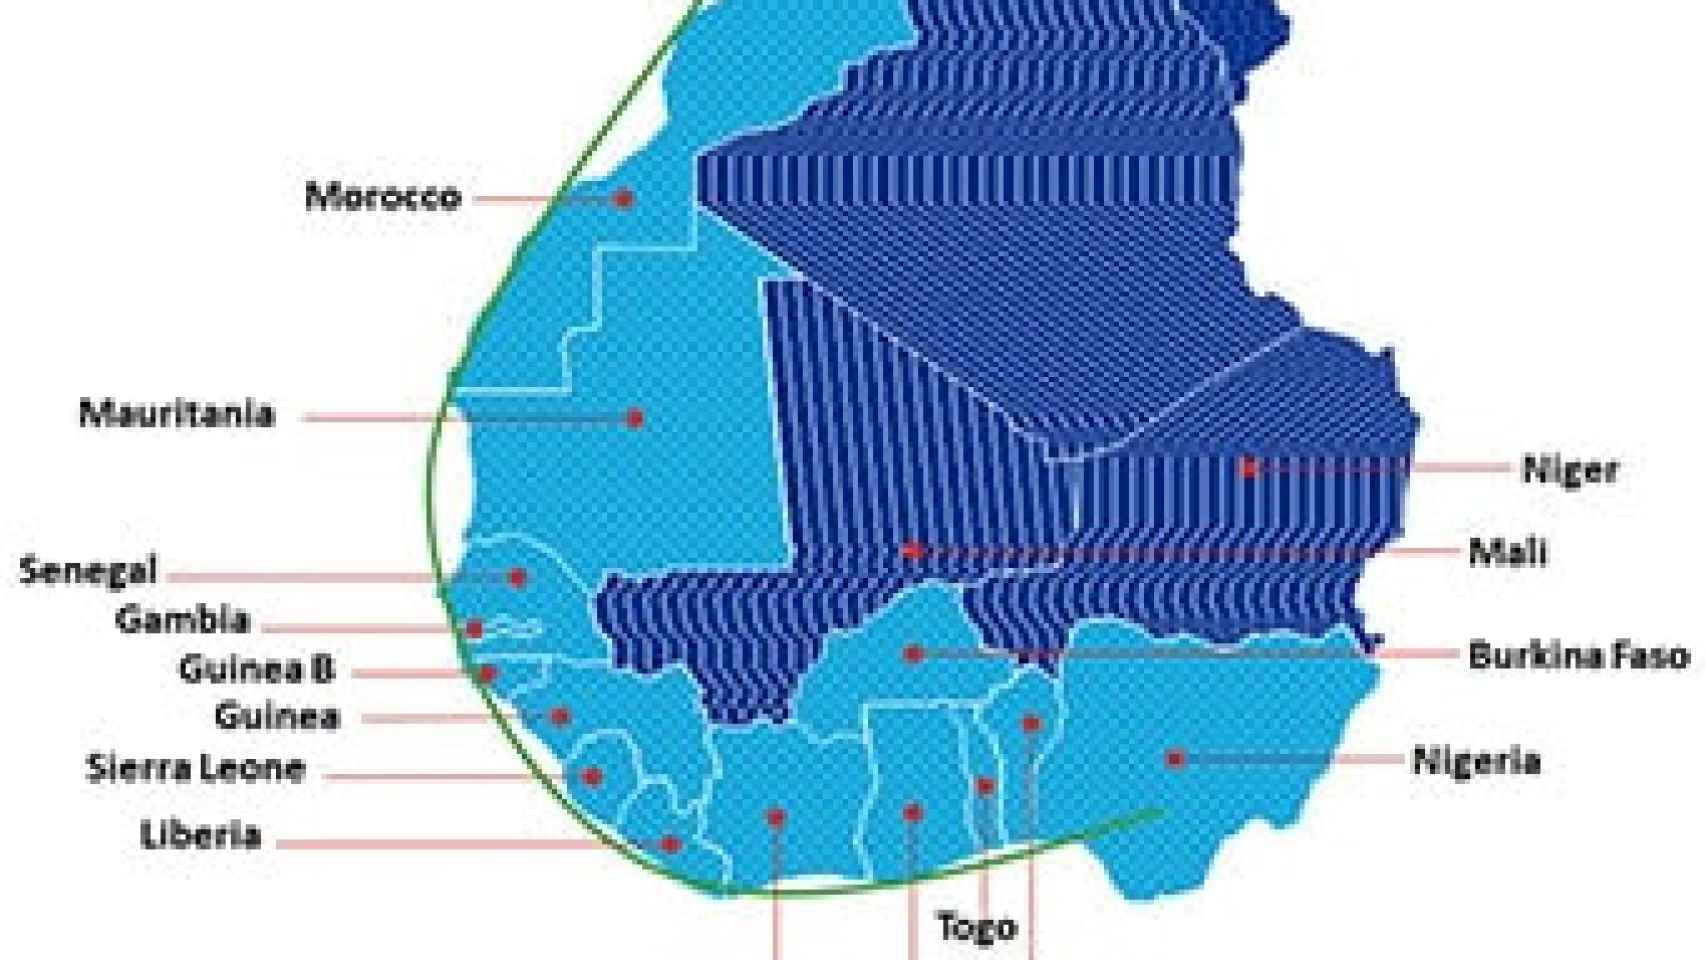 Proyecto del gasoducto acordado entre Nigeria y Marruecos.